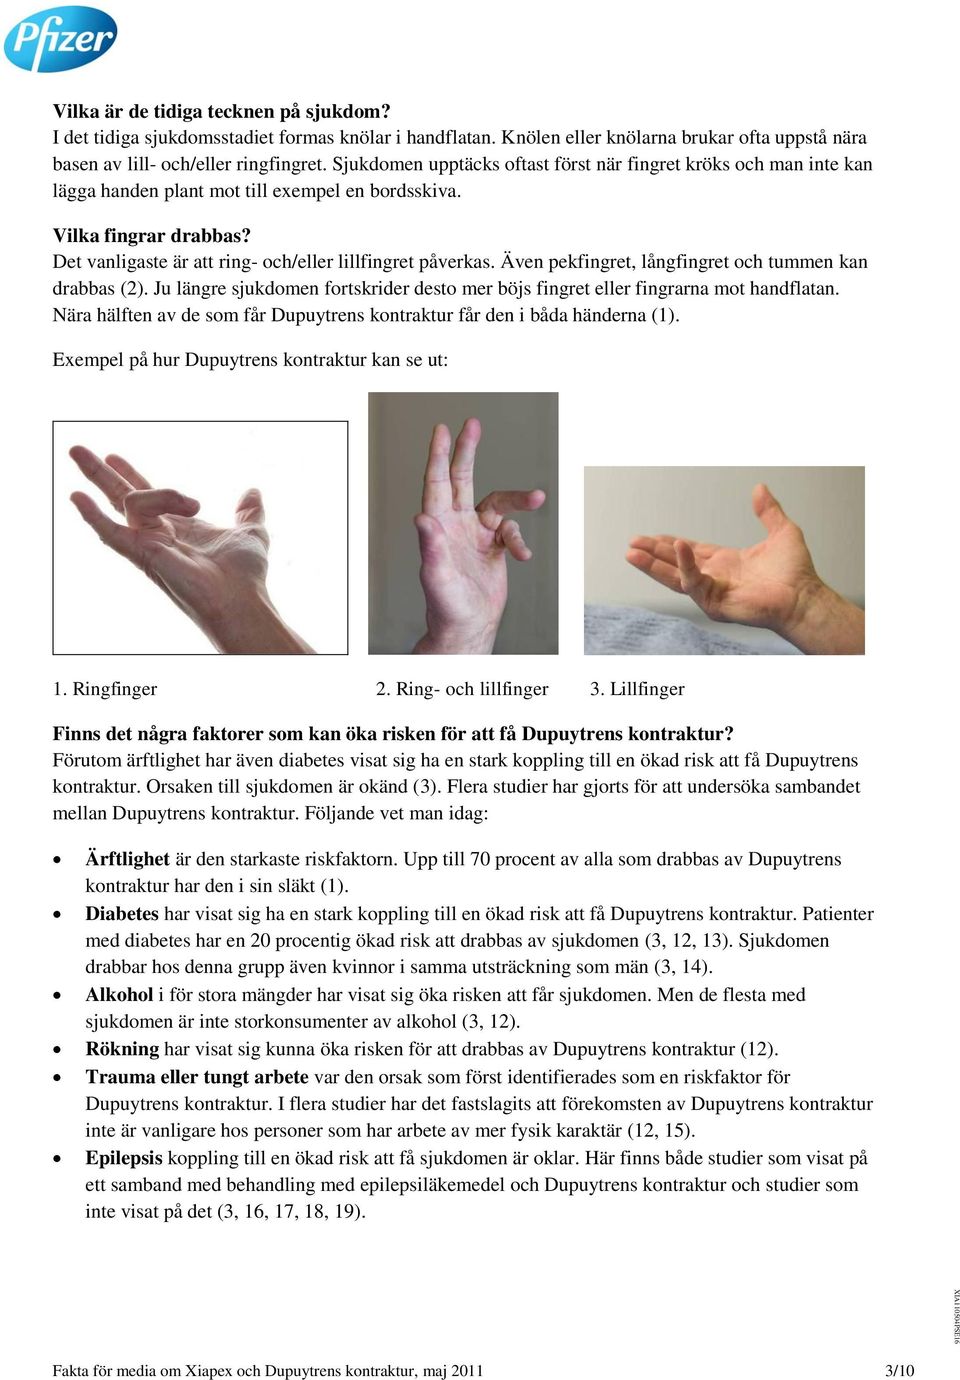 Även pekfingret, långfingret och tummen kan drabbas (2). Ju längre sjukdomen fortskrider desto mer böjs fingret eller fingrarna mot handflatan.